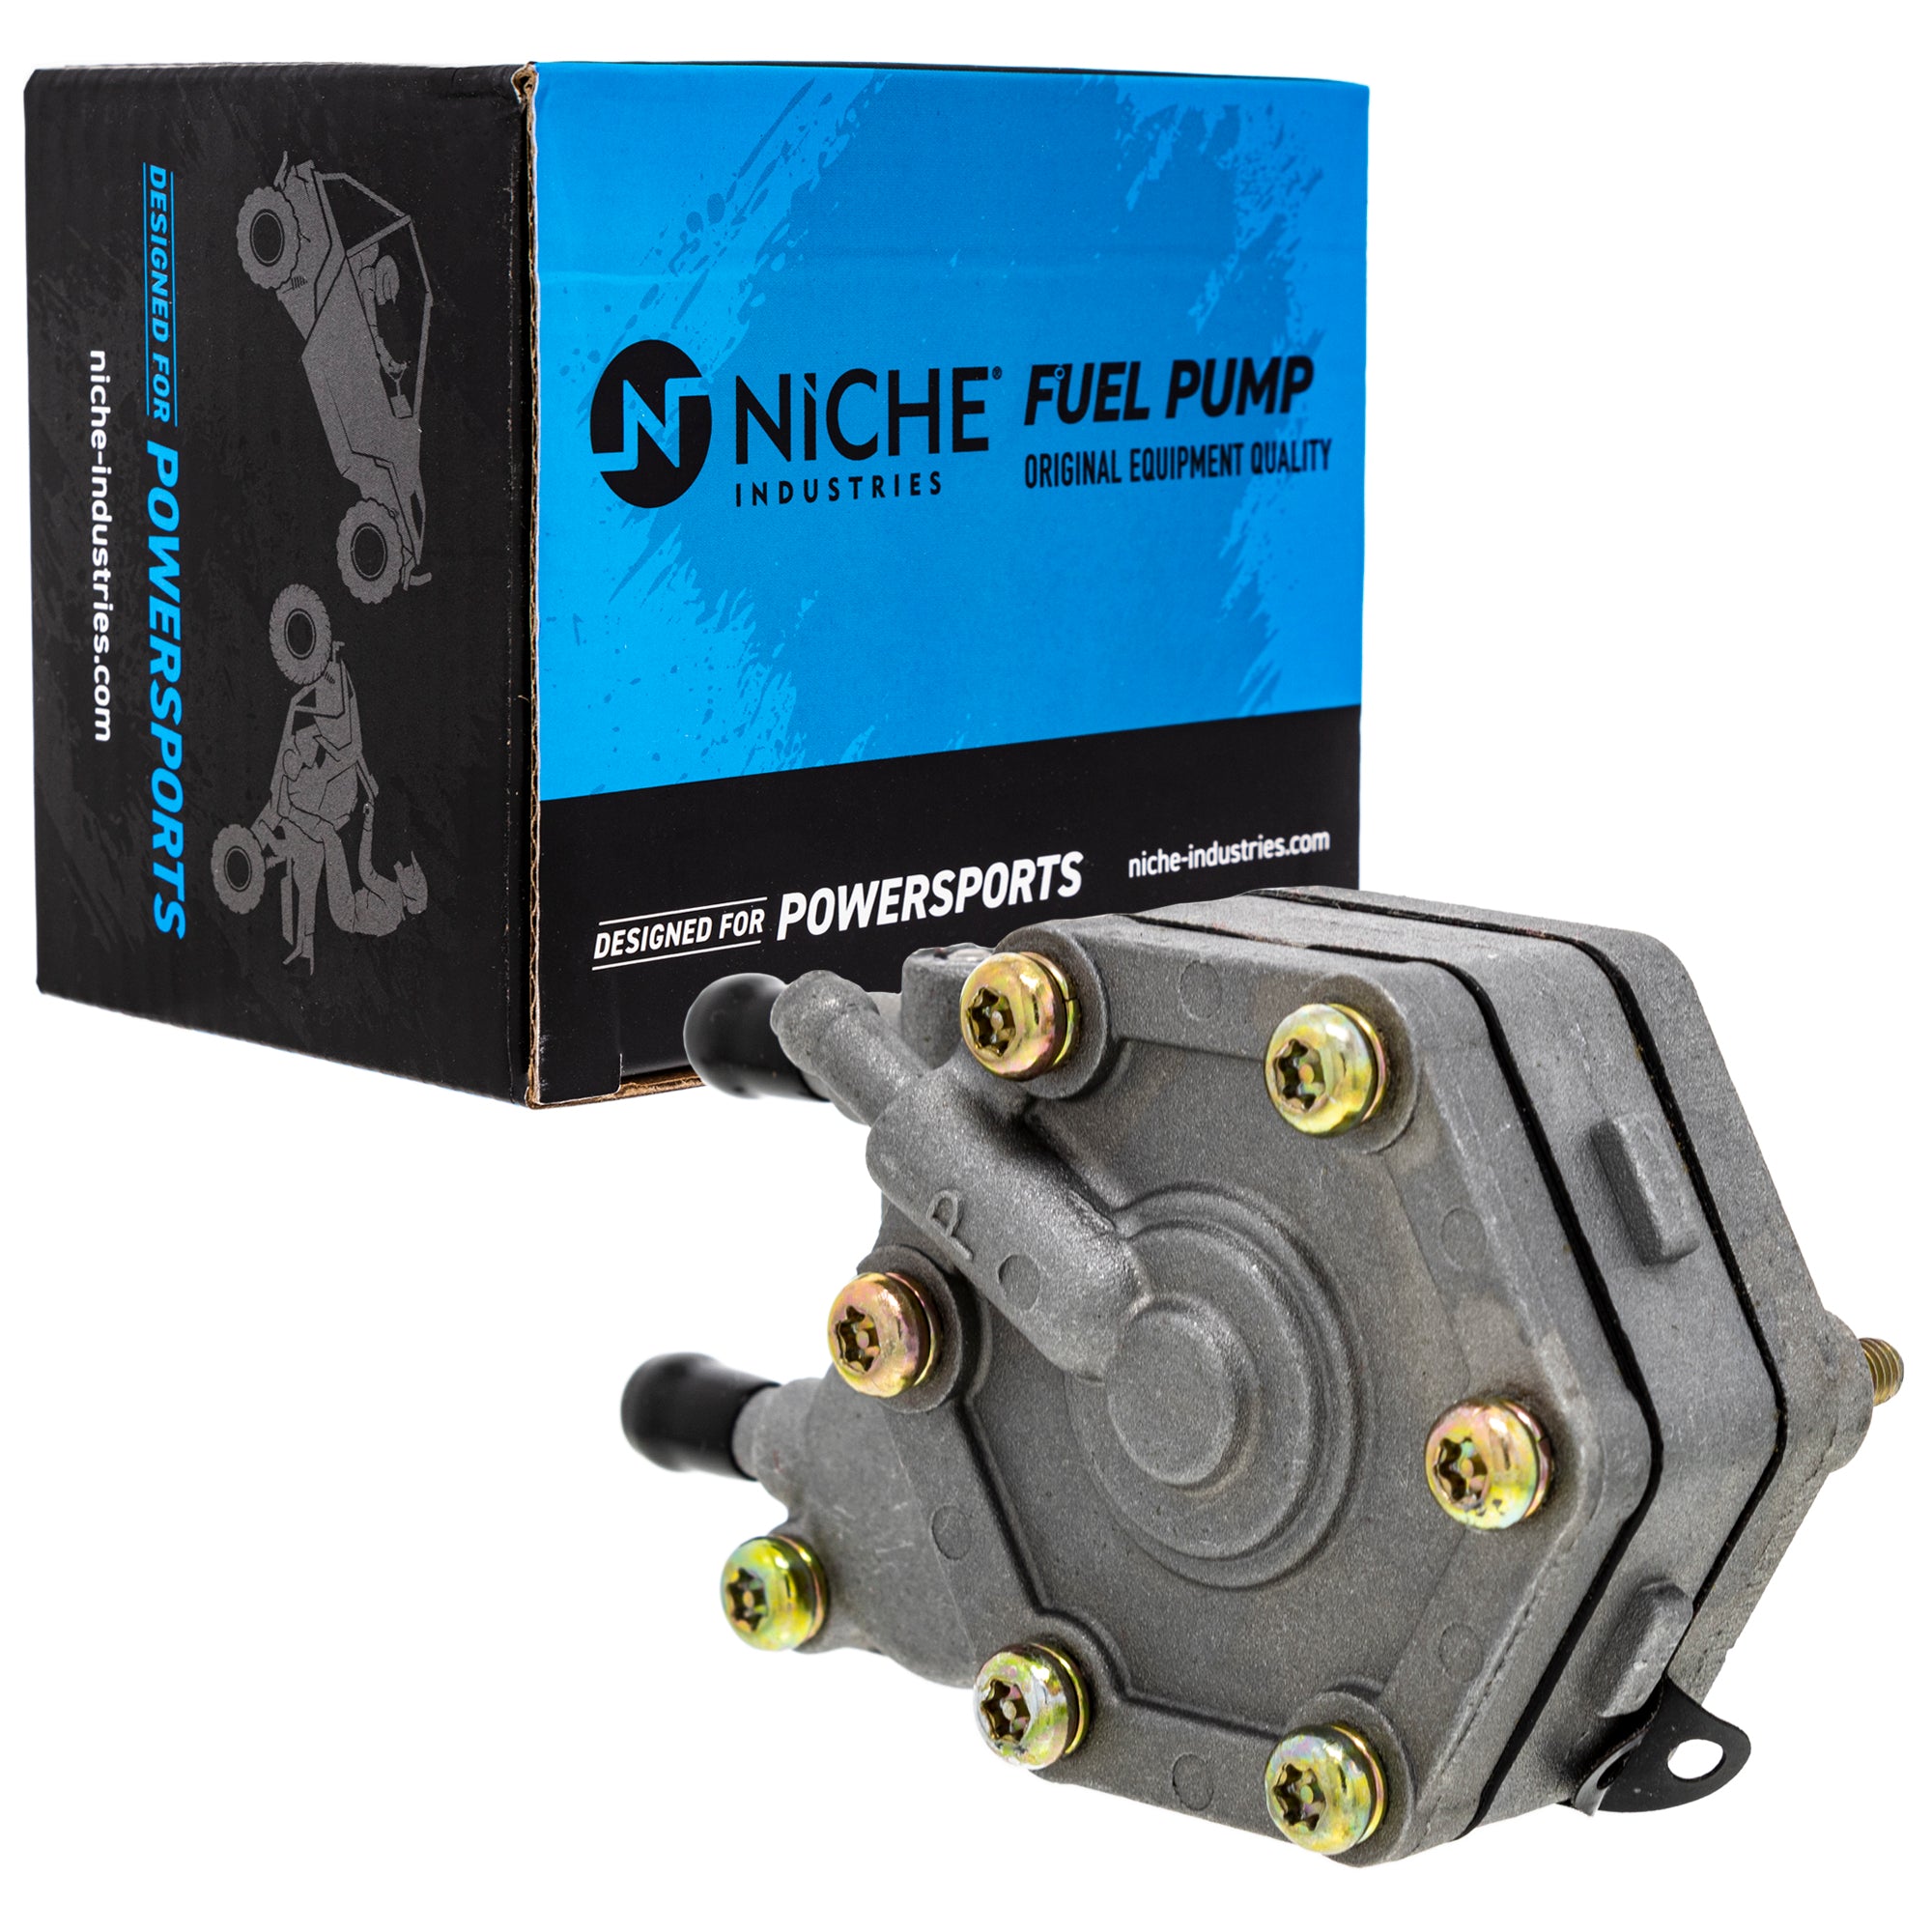 NICHE MK1001130 Cylinder Kit Fuel Pump